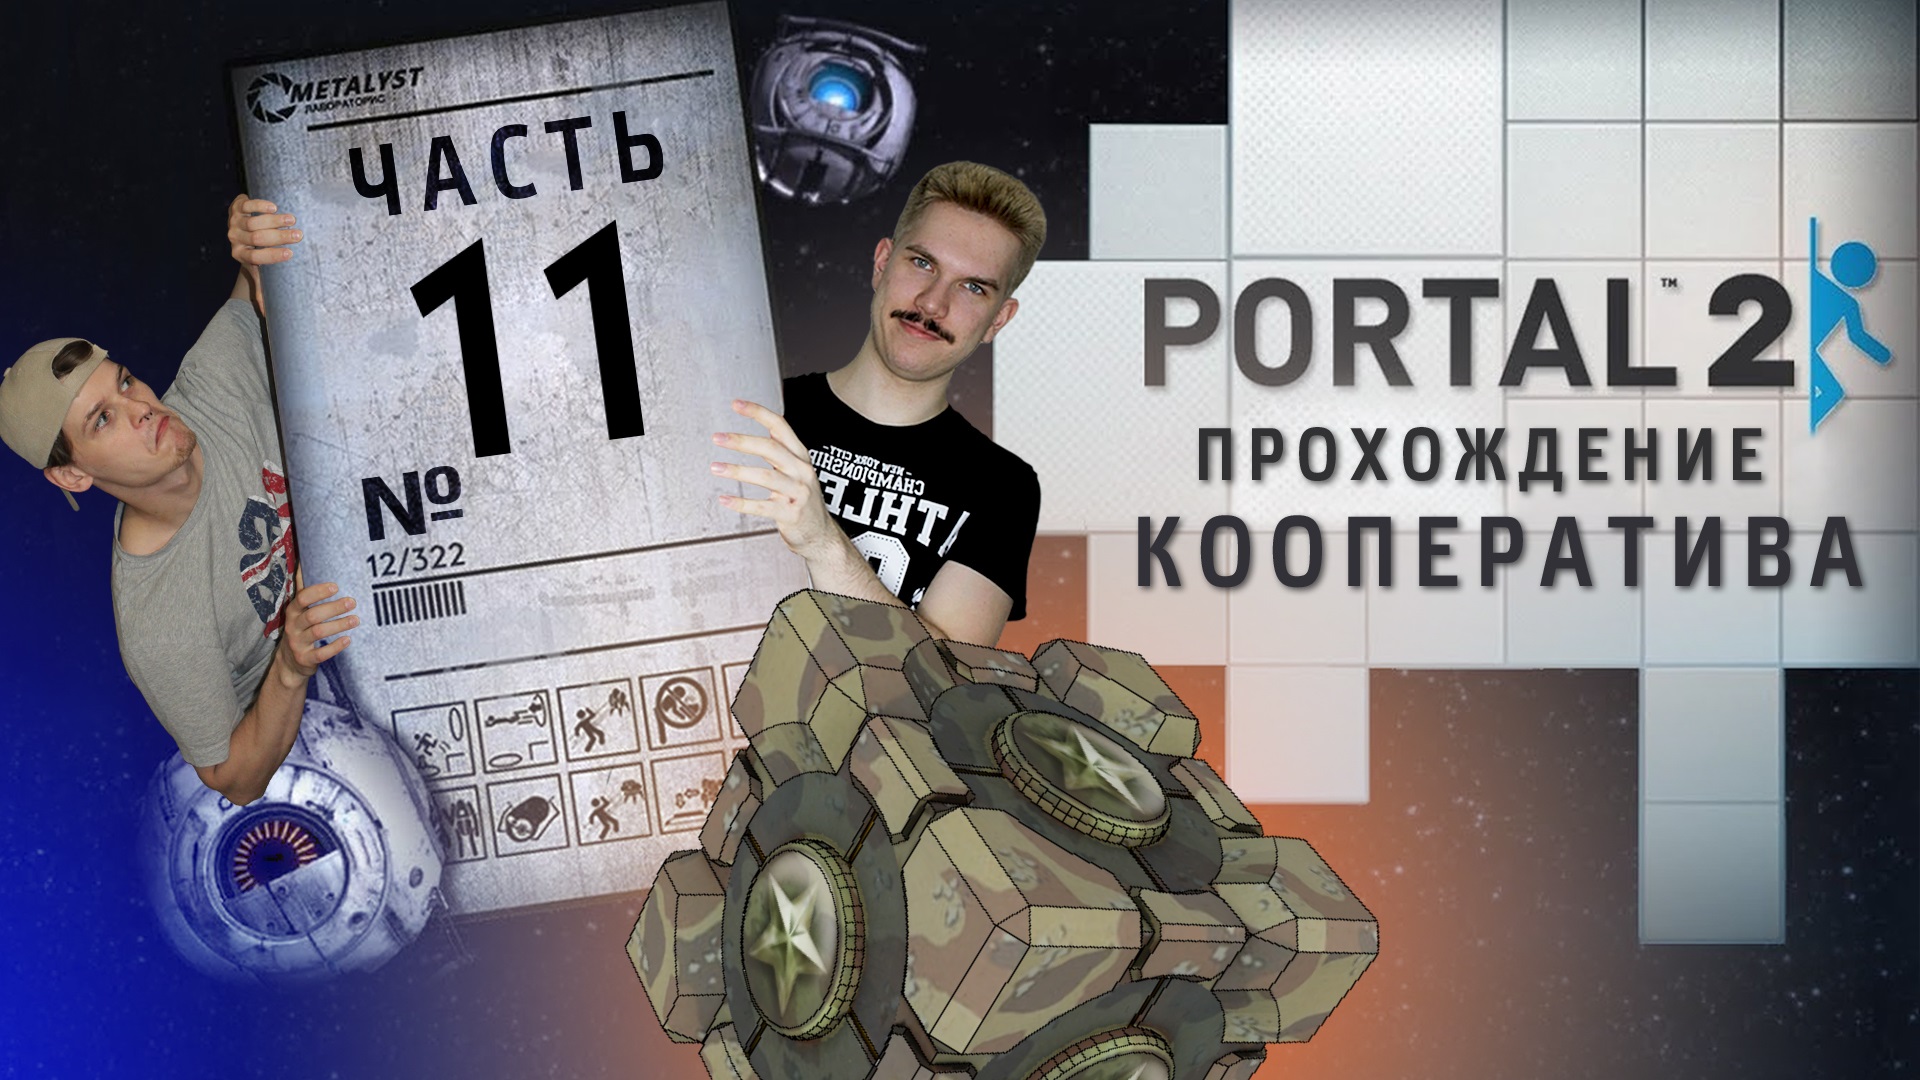 Portal 2 кооператив как пройти фото 22